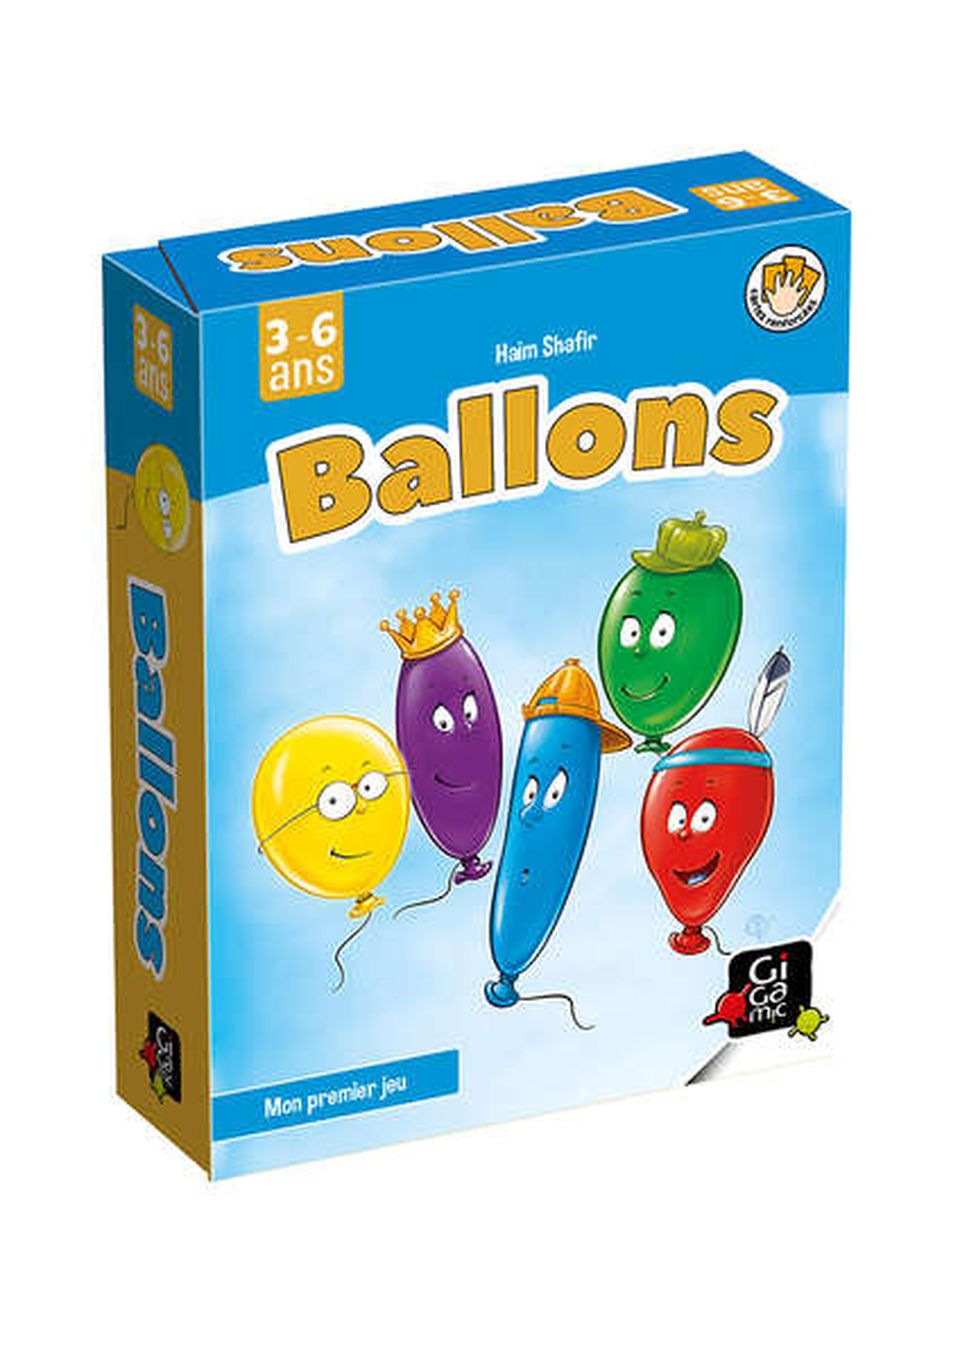 Ballons image